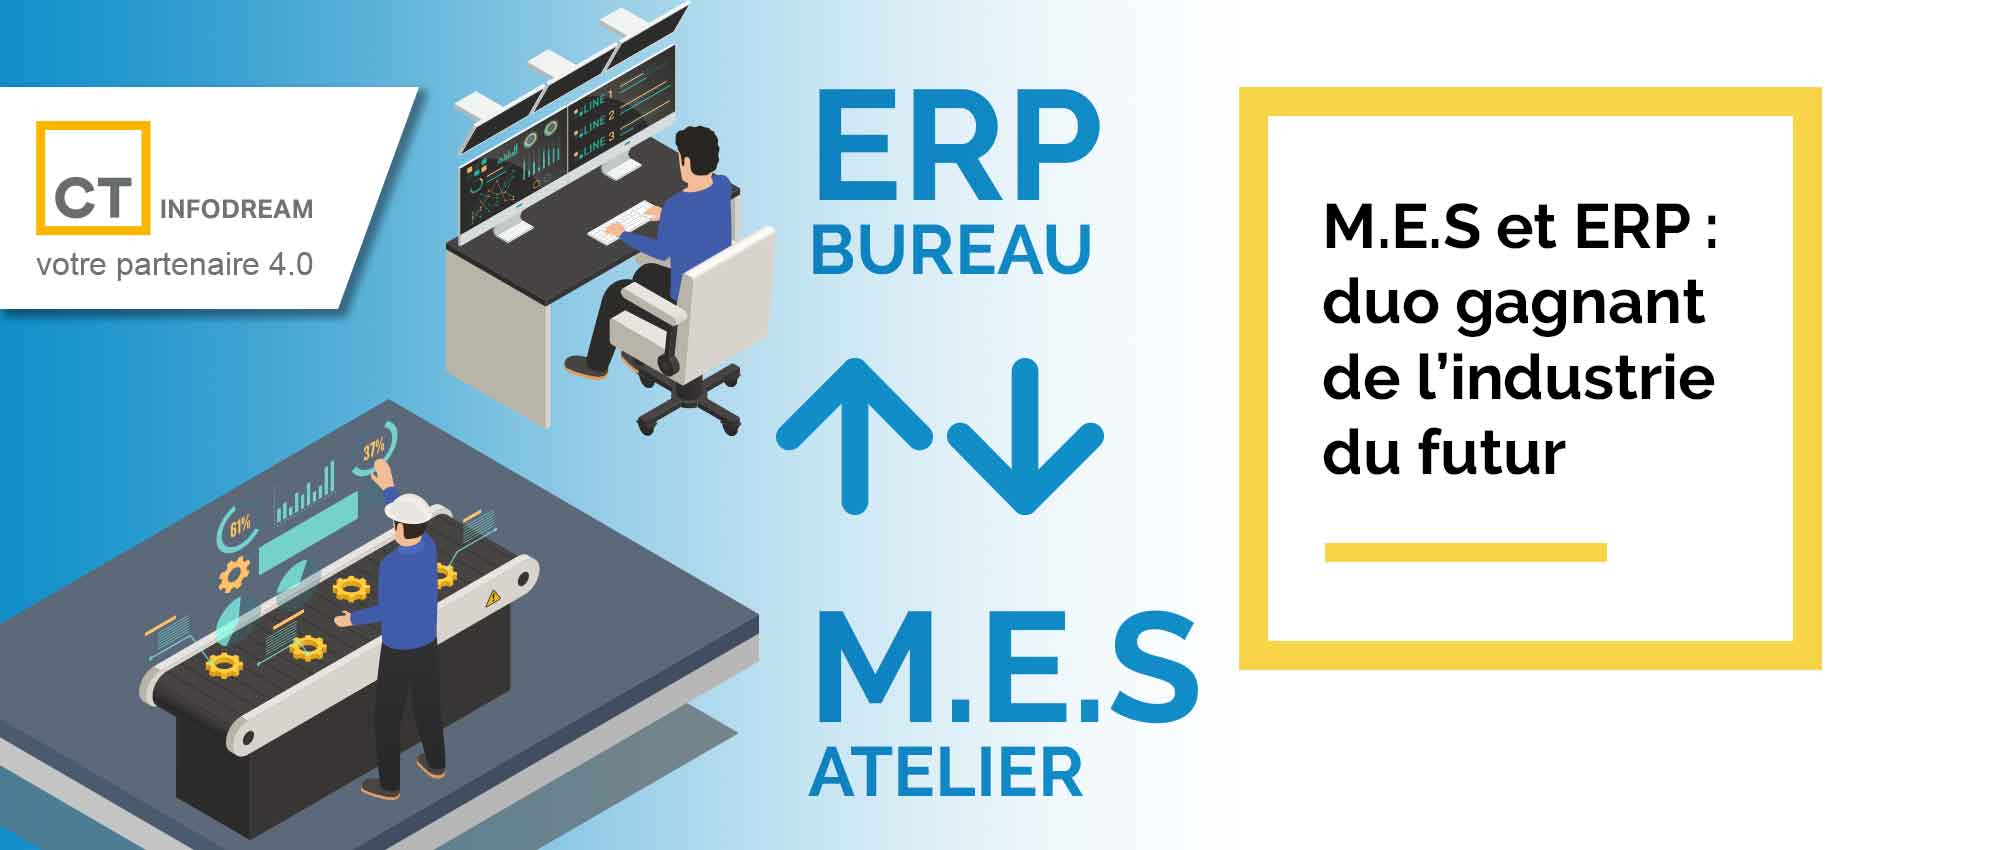 MES et ERP sont complémentaires et échangent les données de production